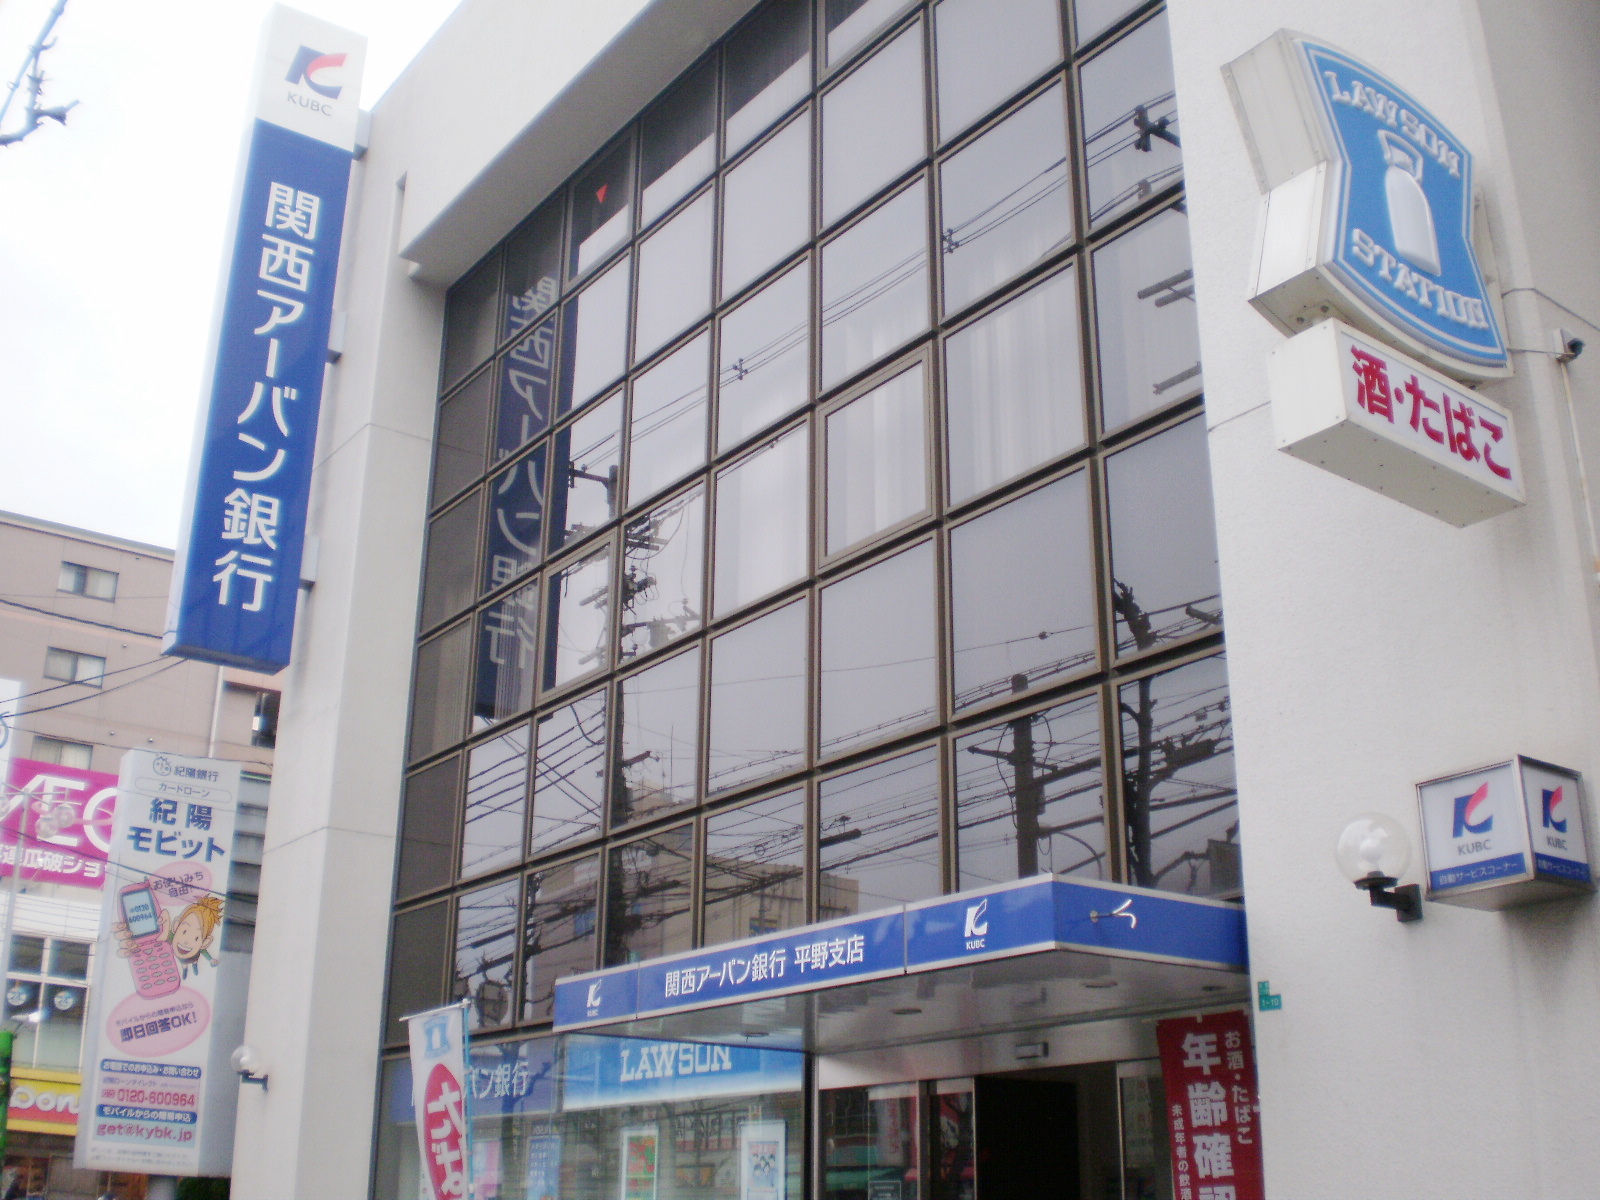 Bank. 723m to Kansai Urban Bank Plain Branch (Bank)